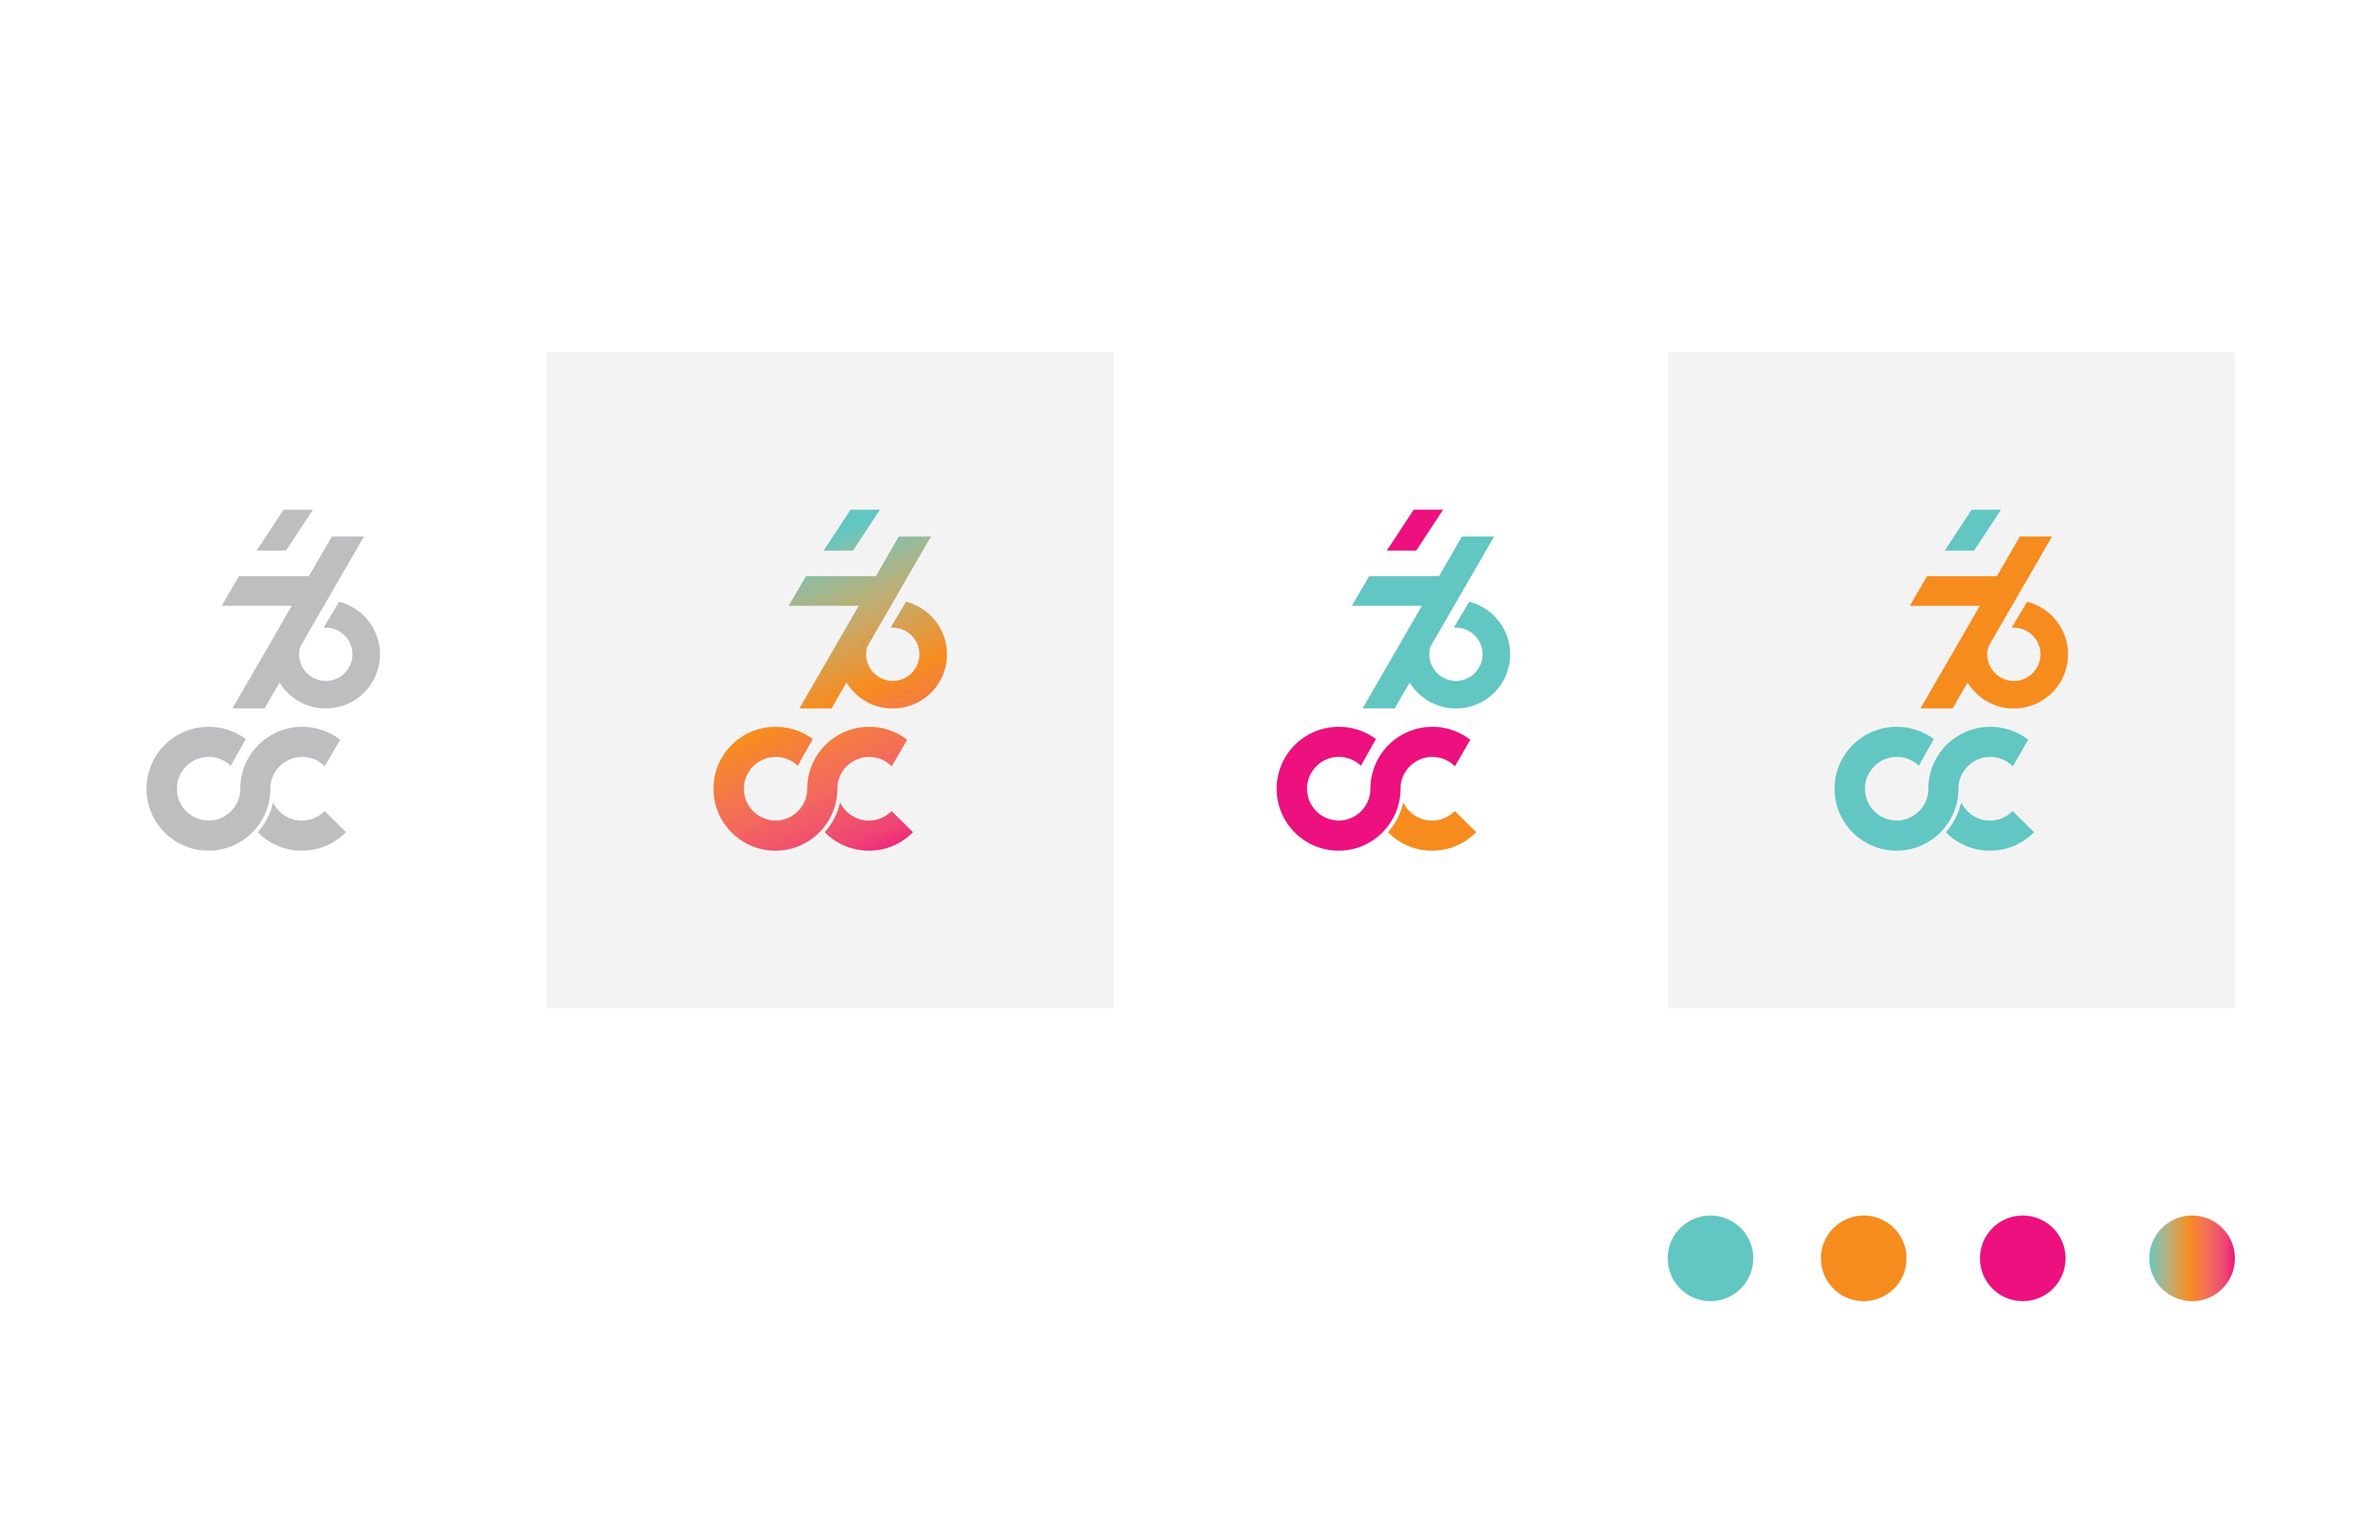 76-CC-Colors-01